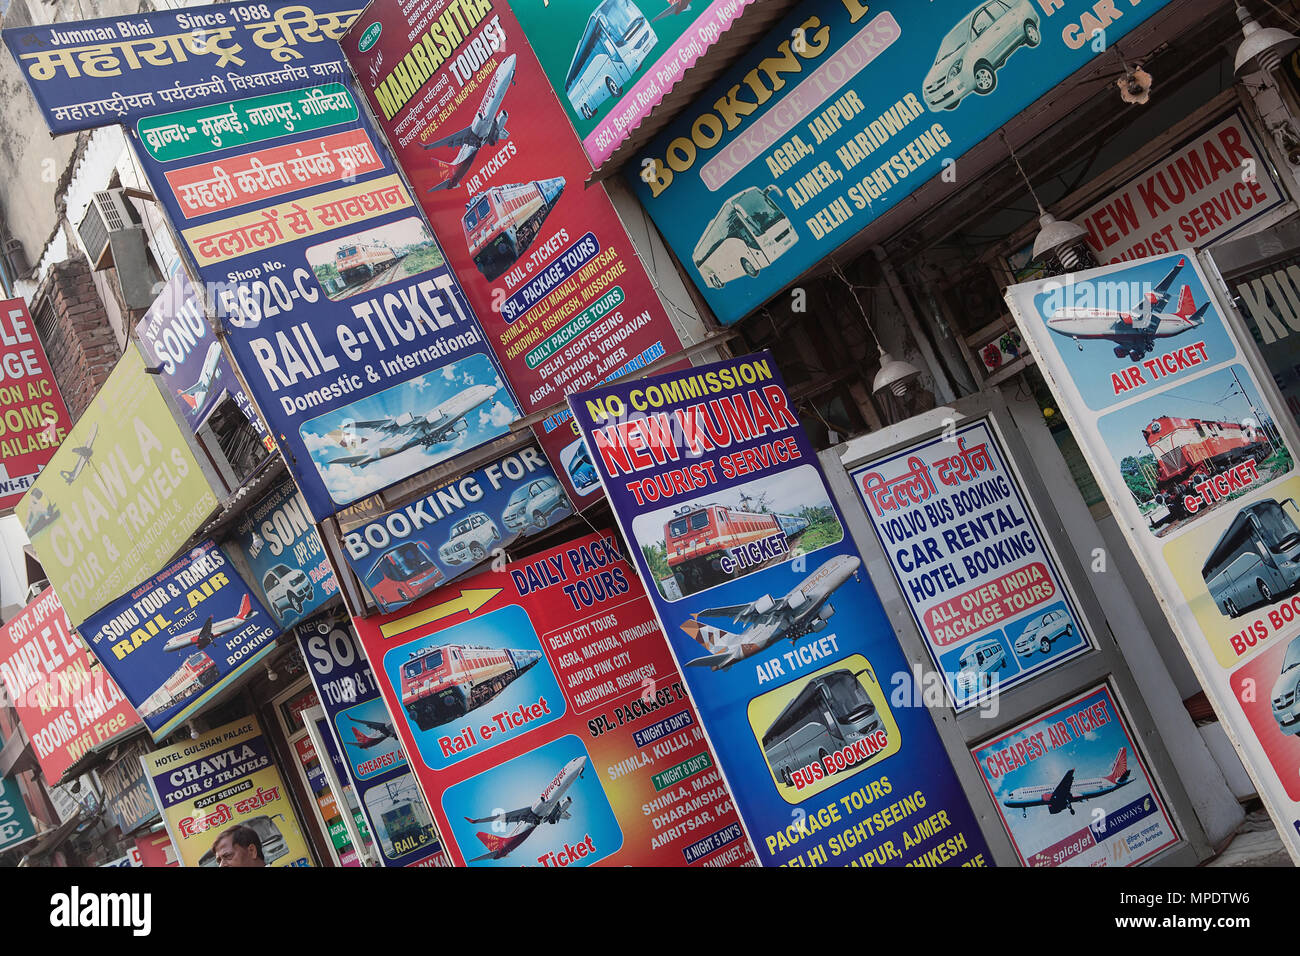 Indien, Neu-Delhi, Advetisement Boards und Werbetafeln für Travel Services in der paharganj Stadtteil von Delhi. Stockfoto